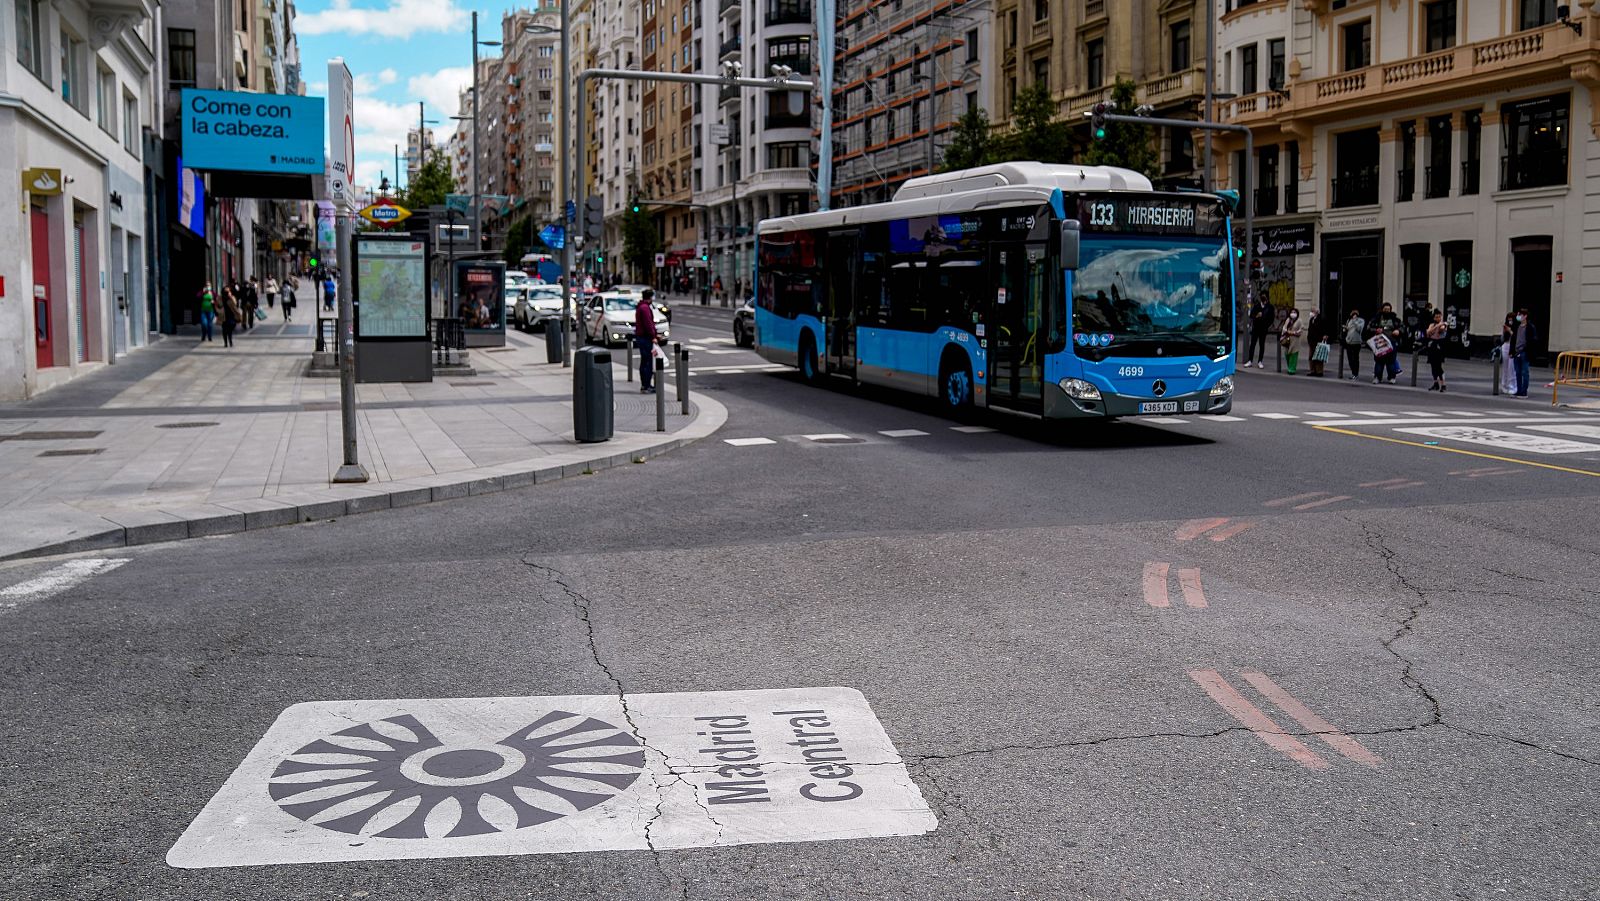 Señal de Madrid Central sobre una de las calles madrileñas.